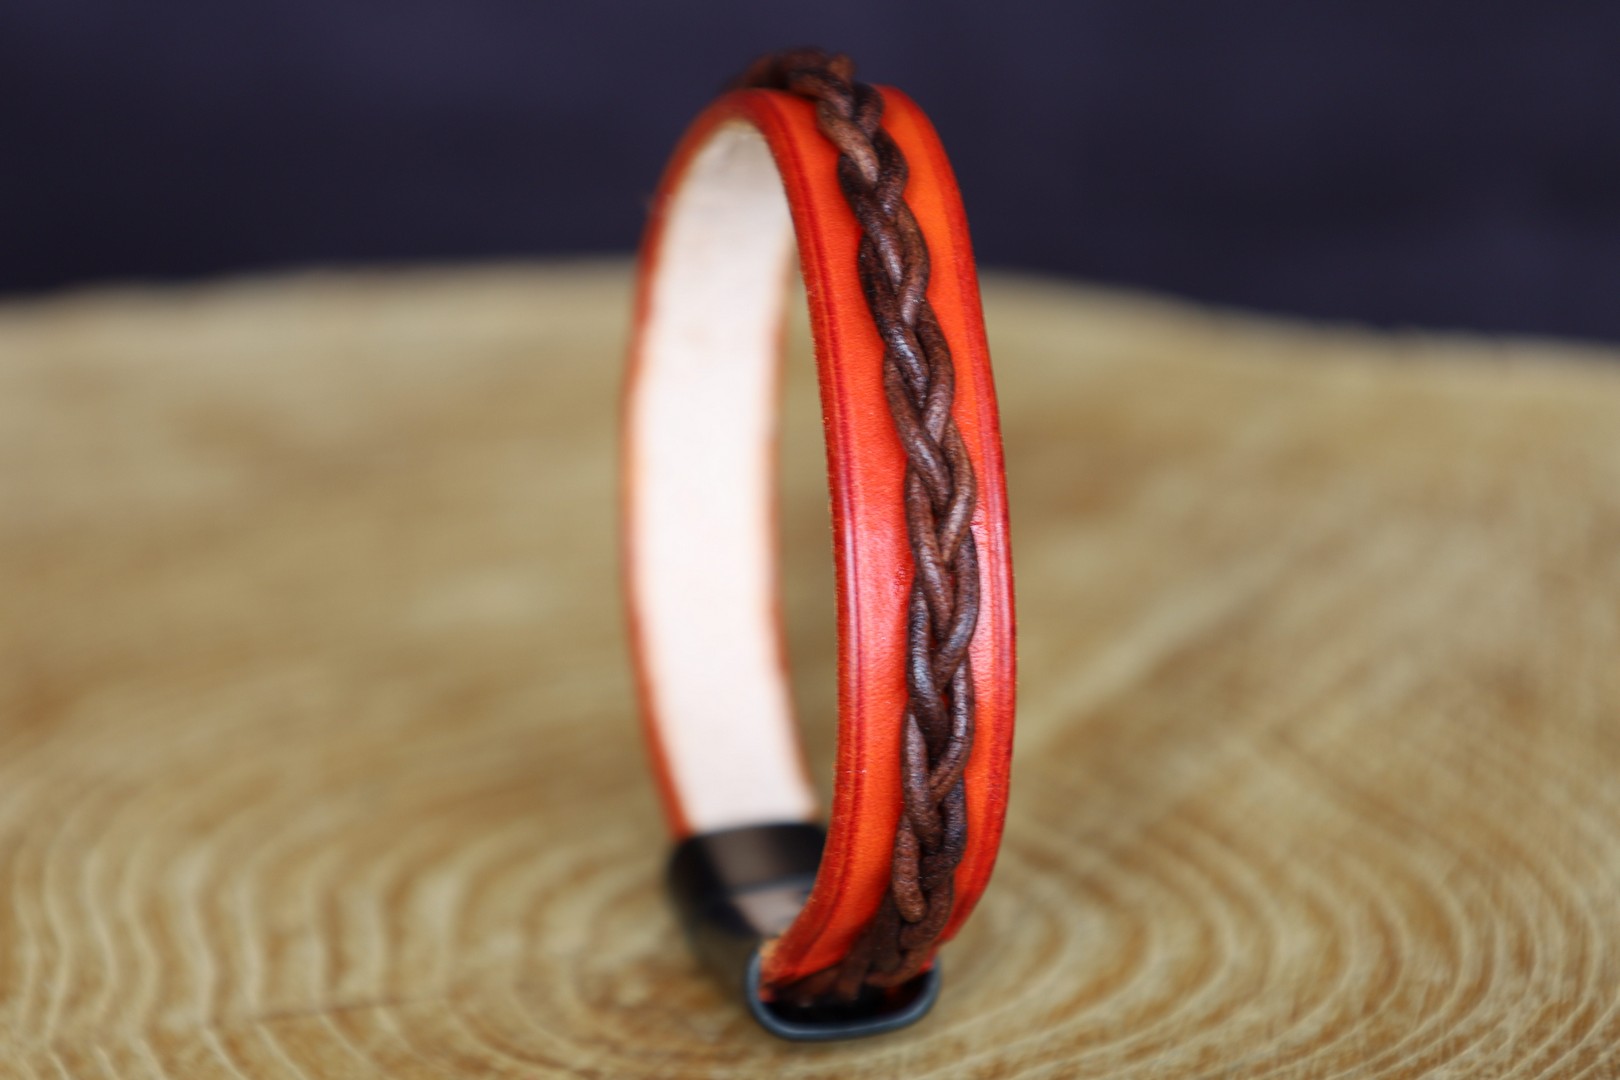 bracelet viking homme femme cuir tressé orange, cuir végétal, l'âge du cuir, maroquinerie artisanale, Dordogne, France